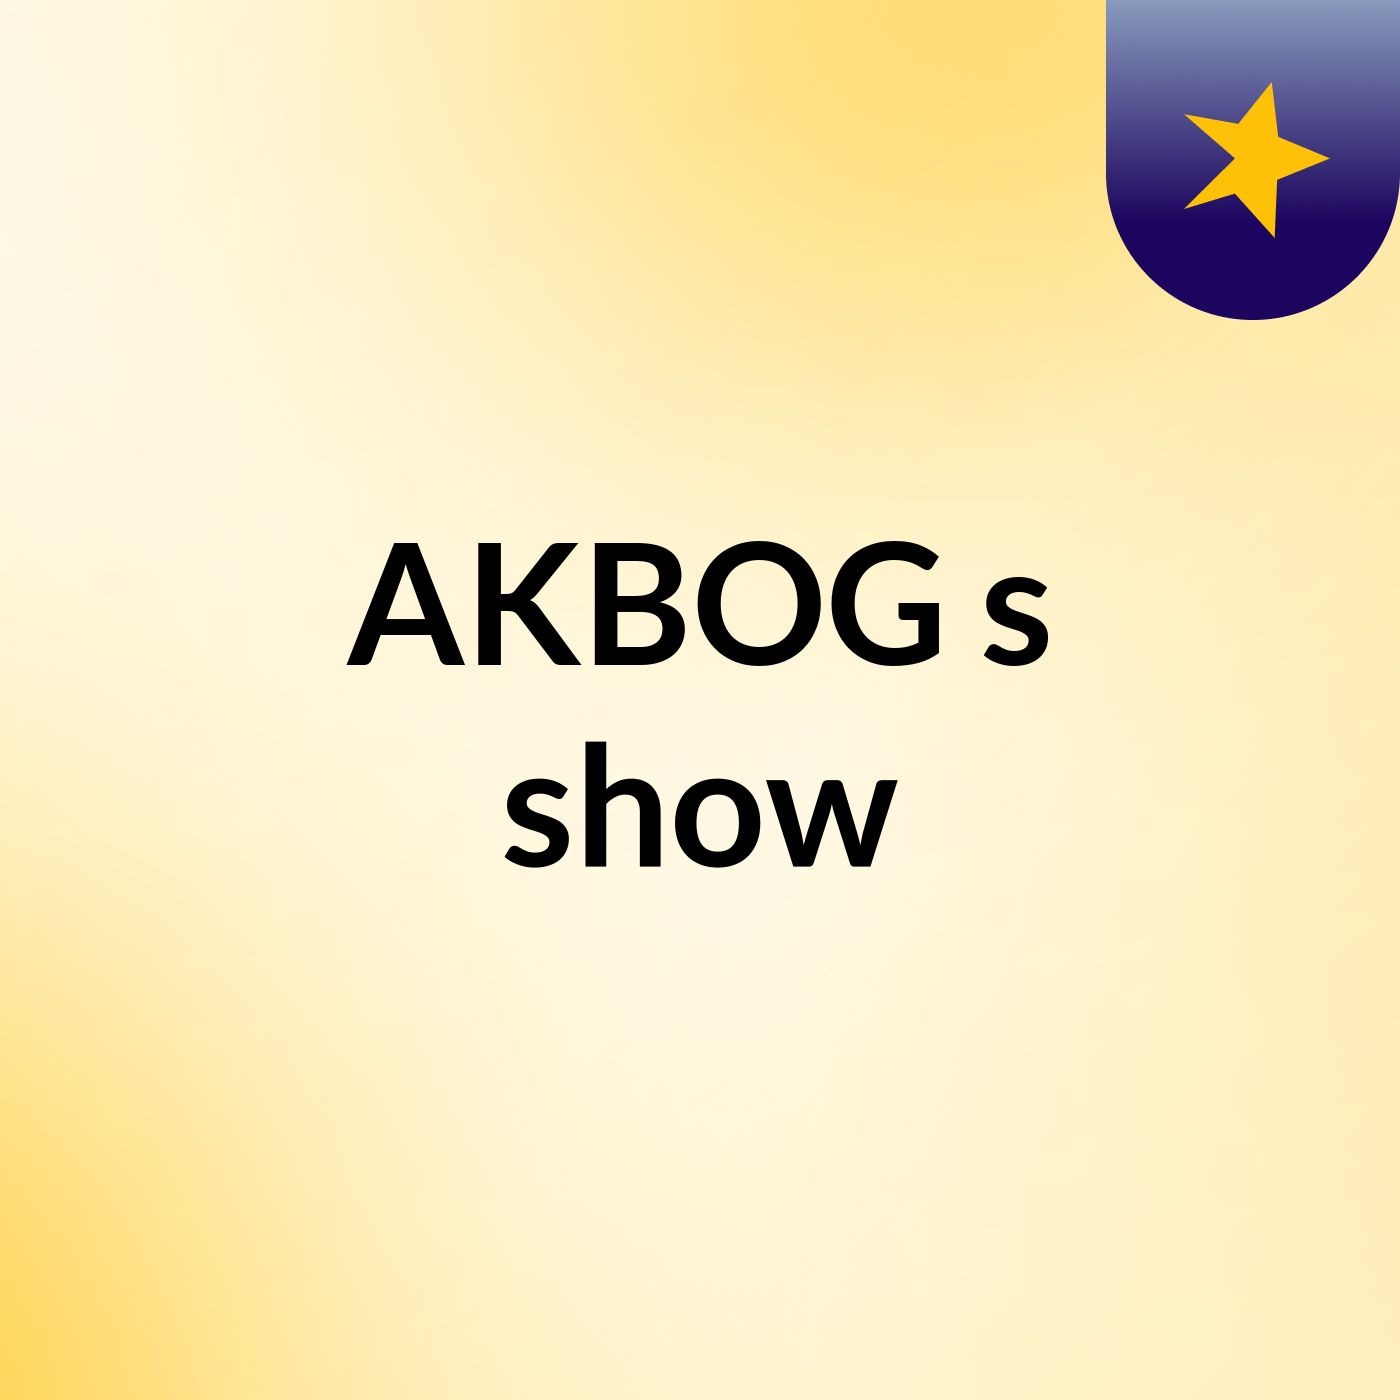 AKBOG's show